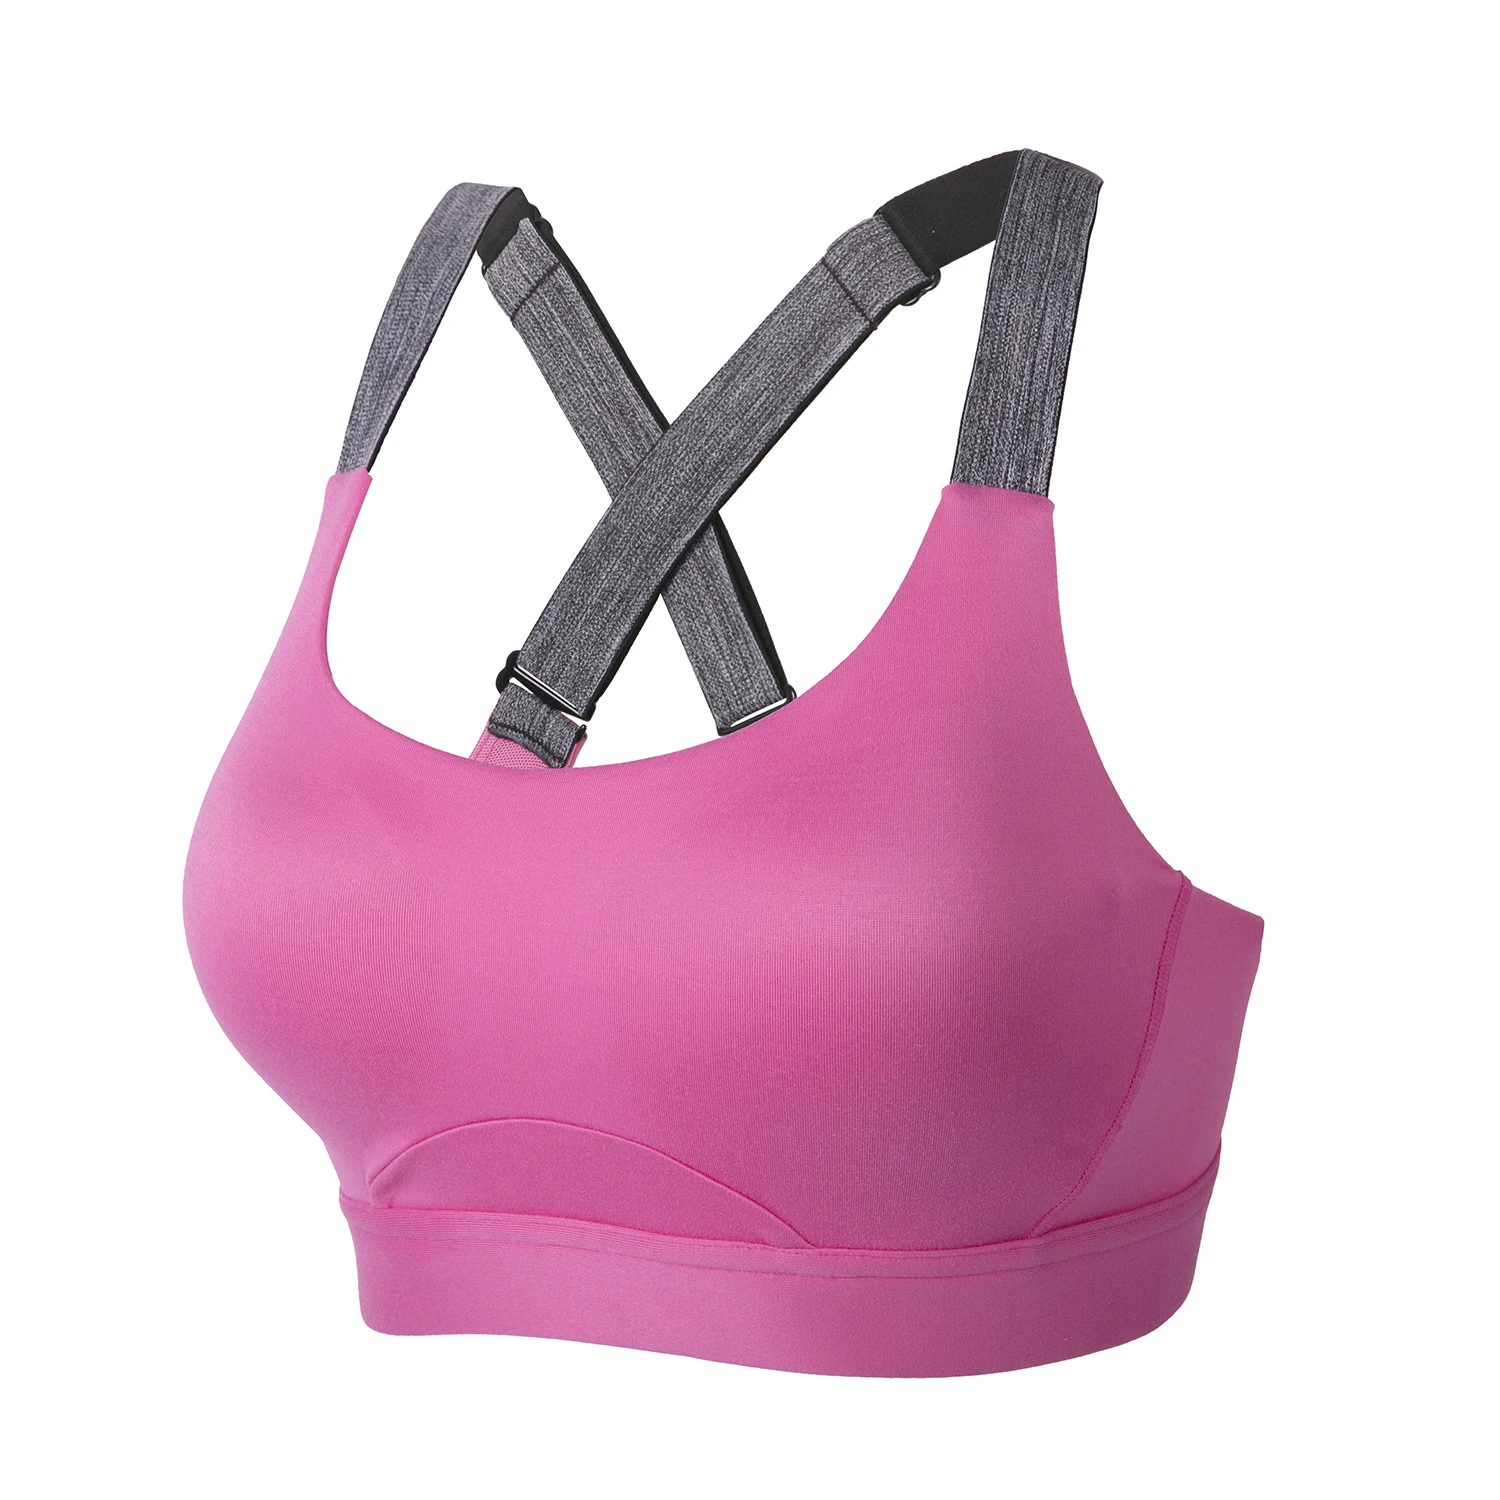 La Isla женский ударопрочный формованный бюстгальтер с полным покрытием на косточках для тренировок - Цвет: Hot Pink5